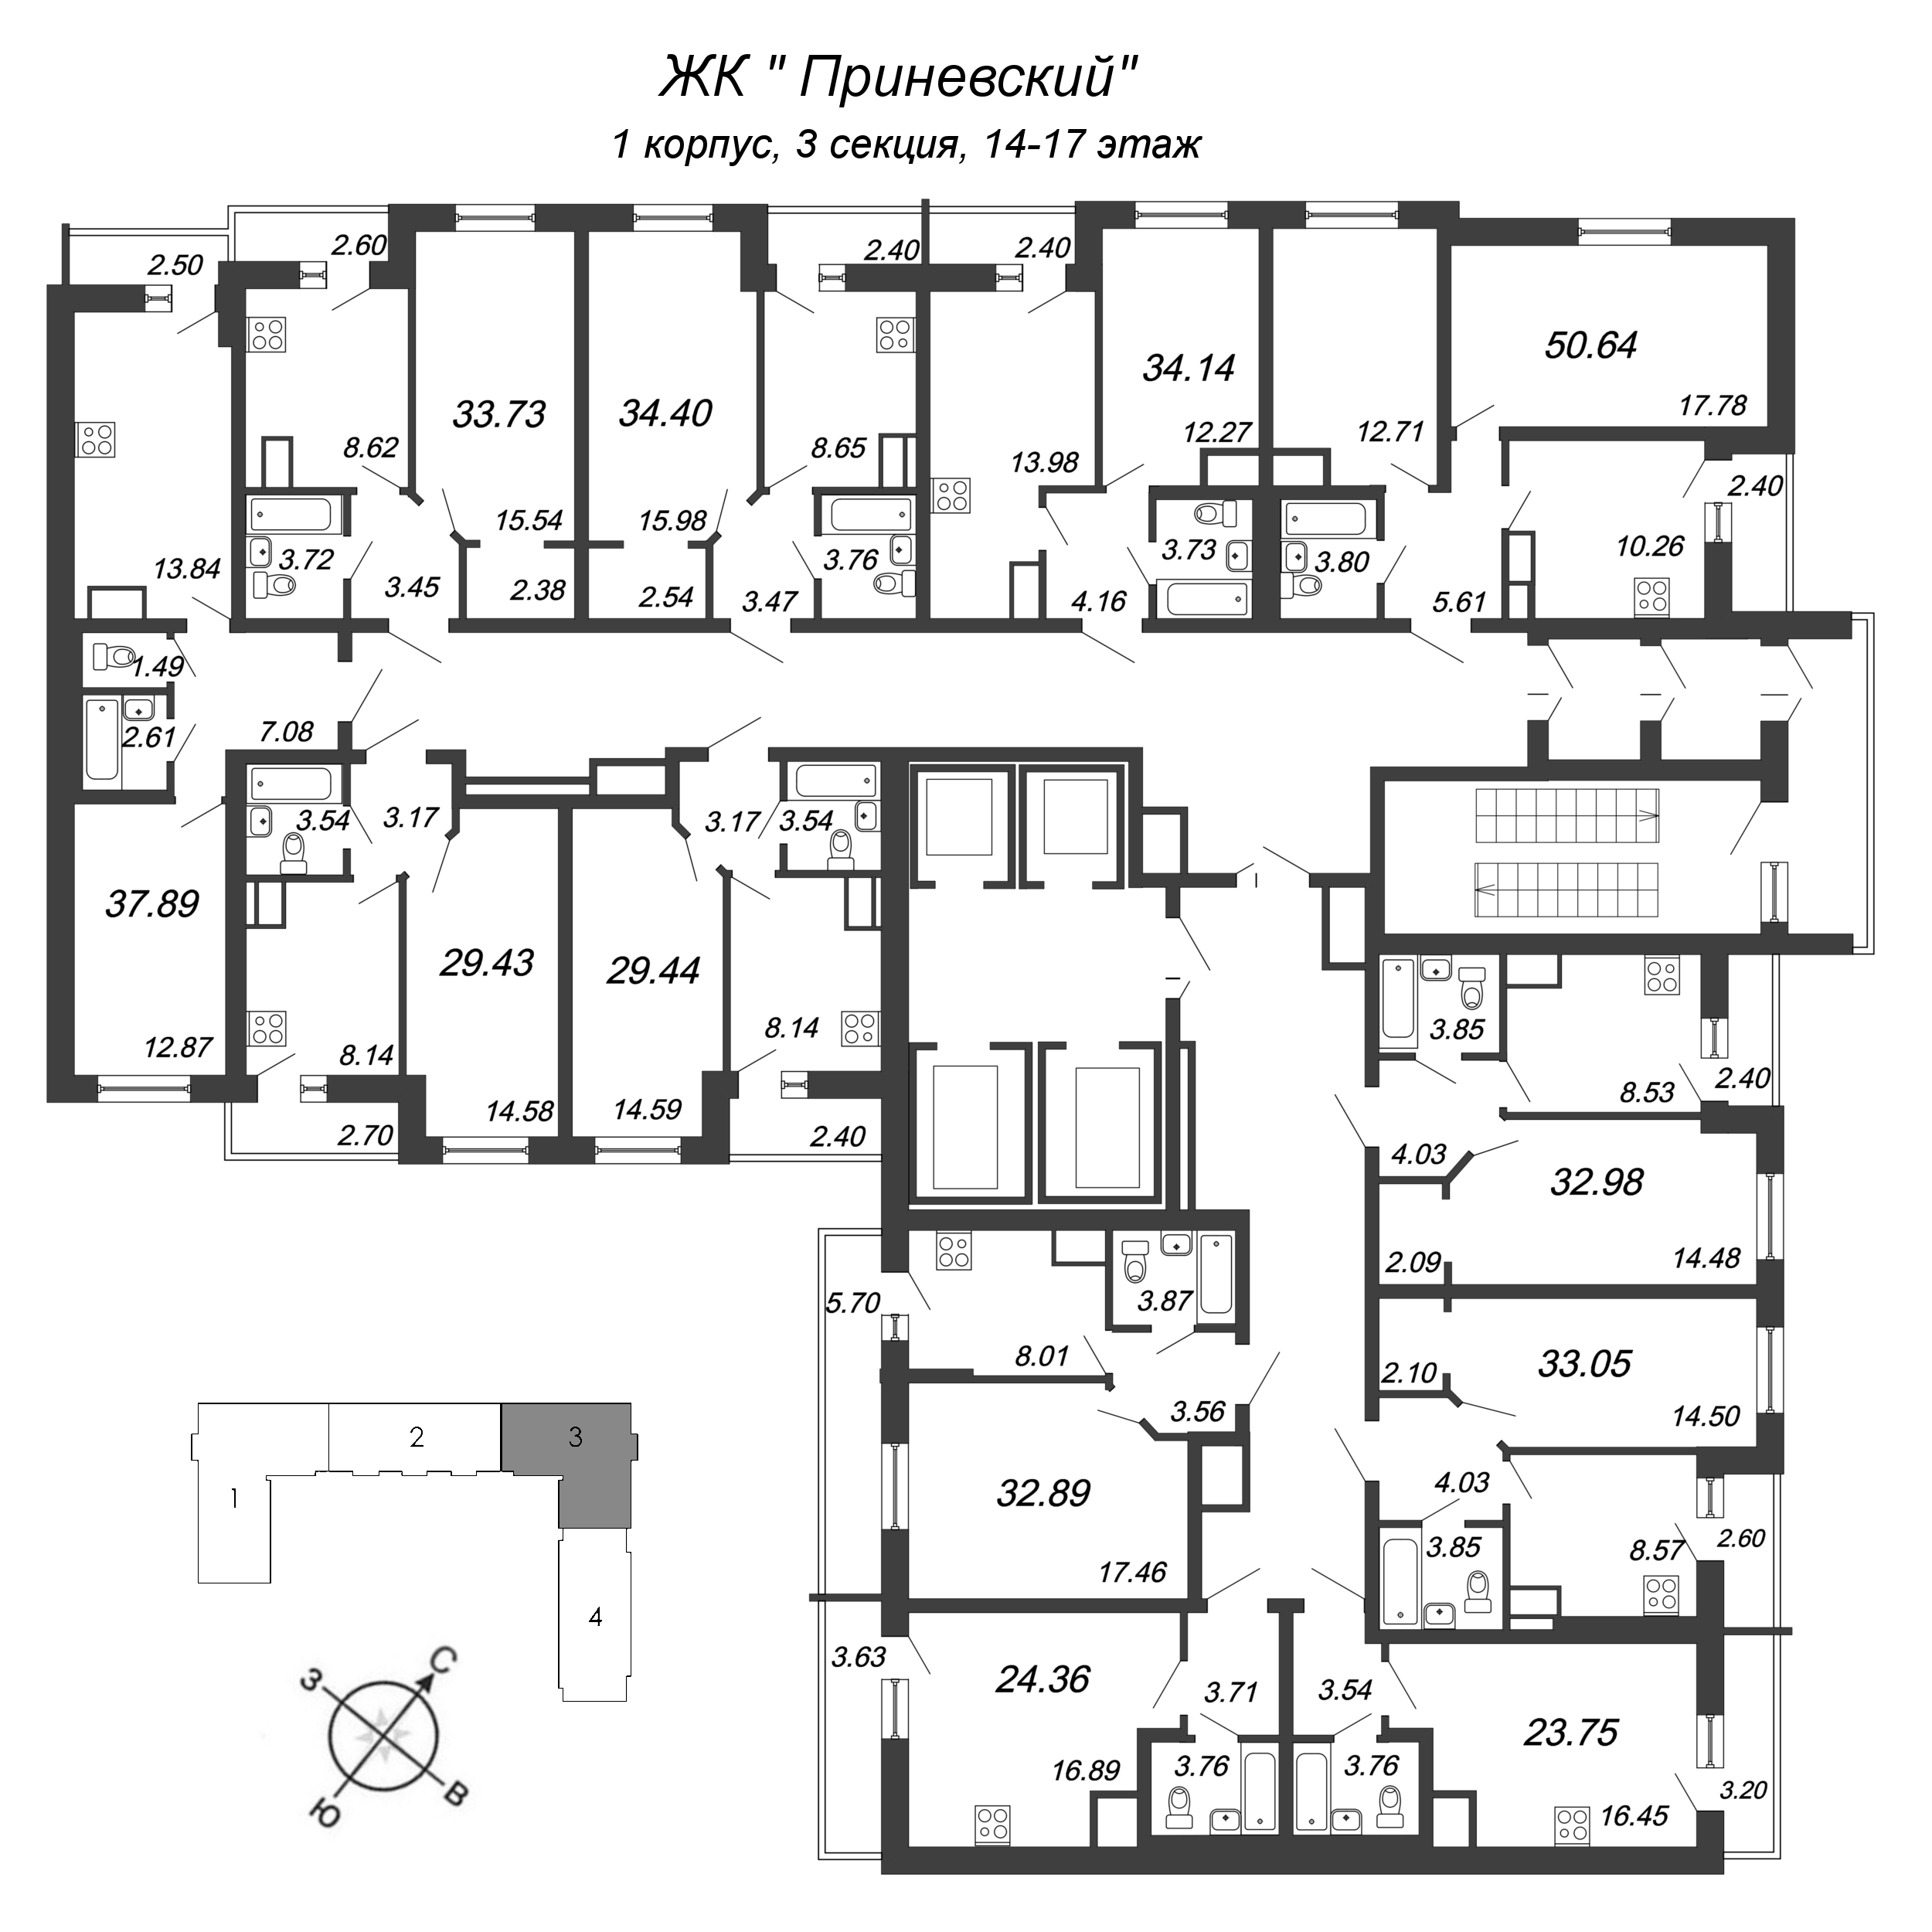 Квартира-студия, 24.36 м² в ЖК "Приневский" - планировка этажа